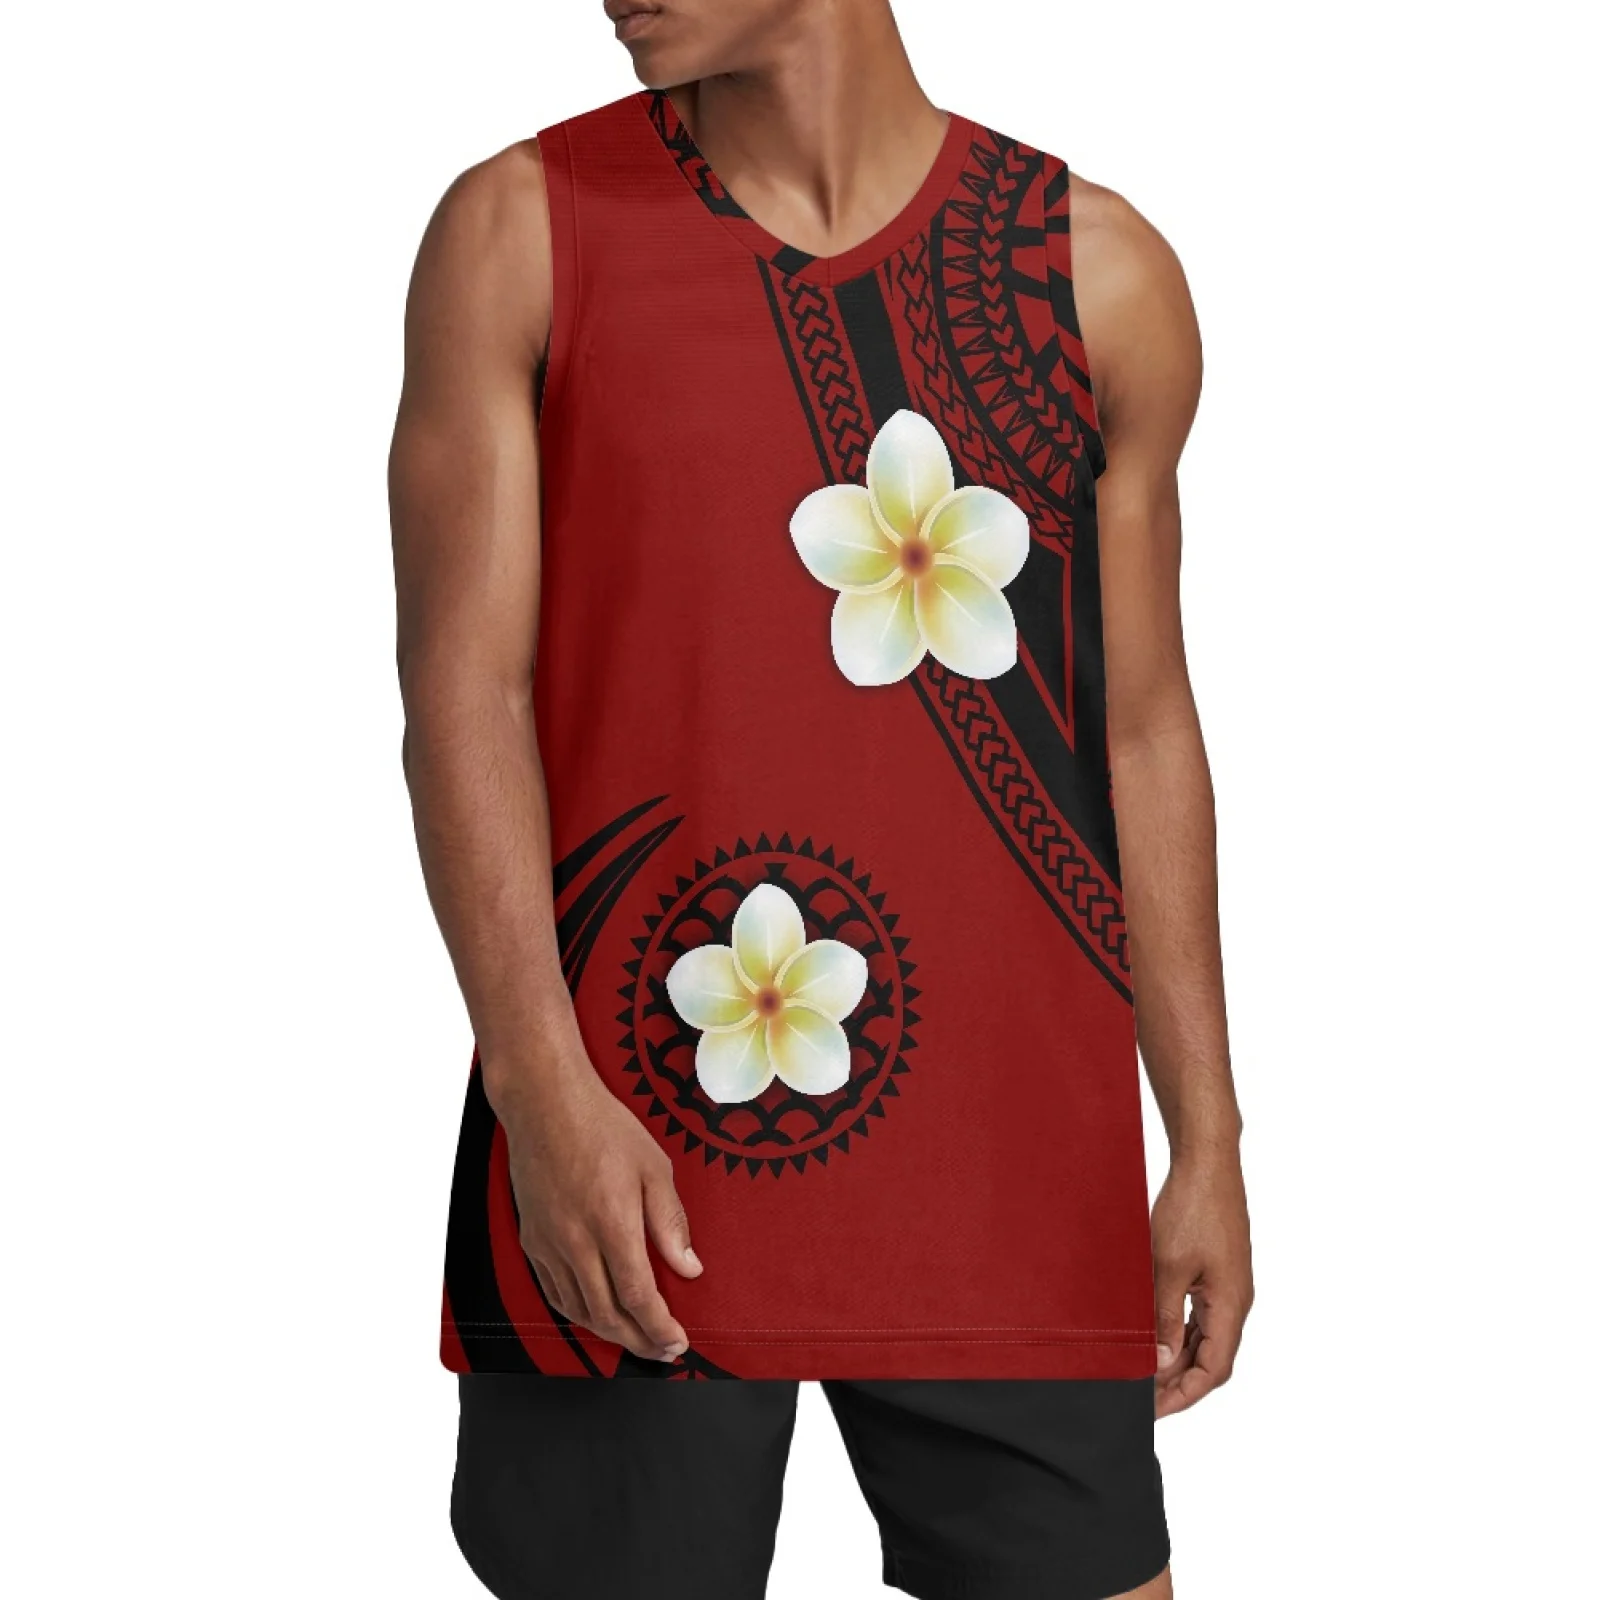 

Полинезийские племенные Фиджийские тату Тотем Фиджи принты мужские сшитый баскетбольный трикотаж спортивные рубашки хип-хоп одежда для ве...